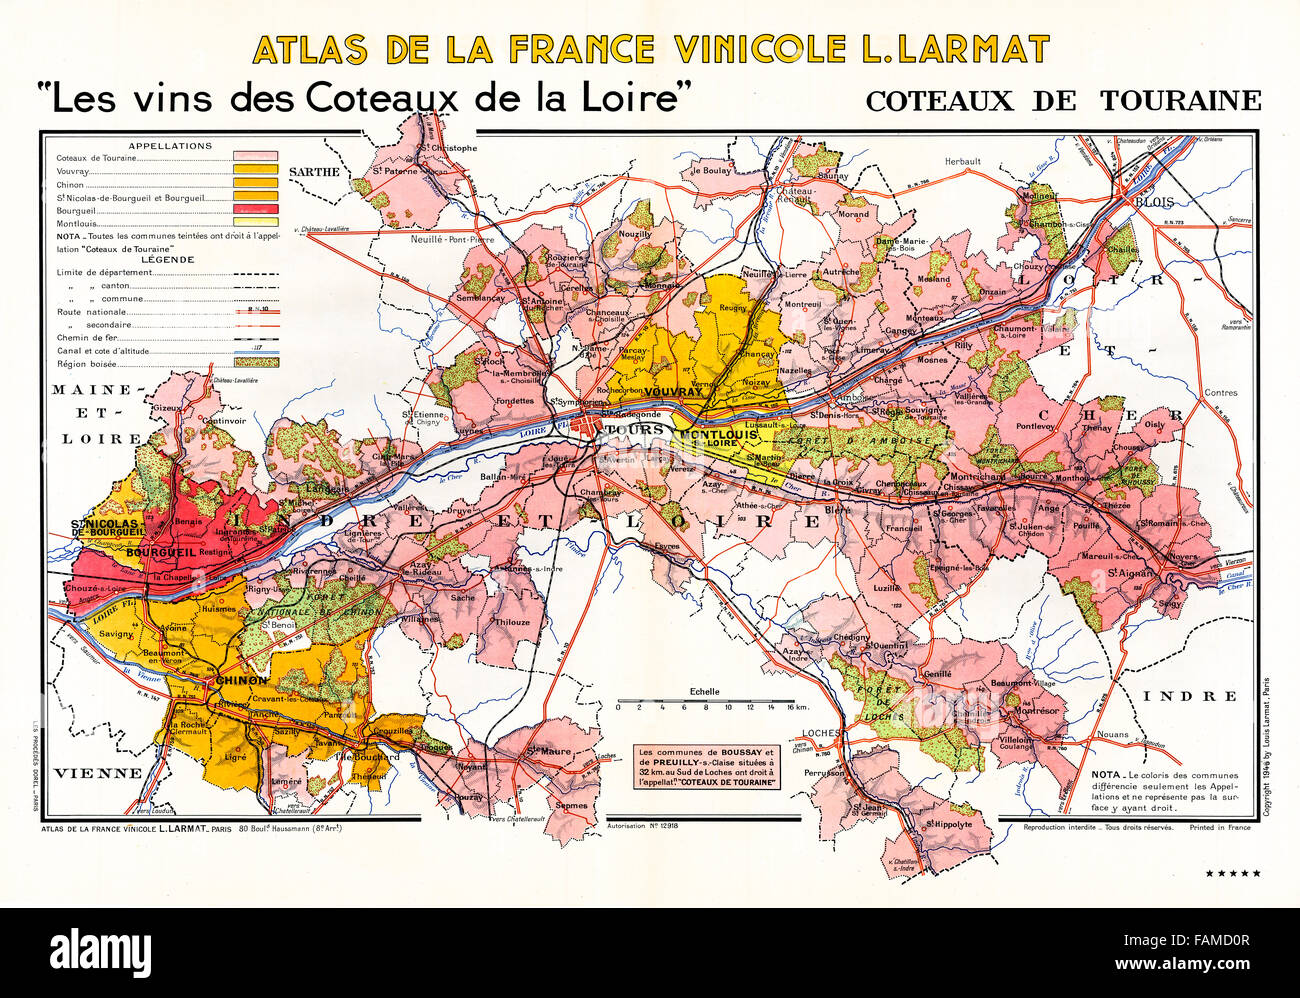 Coteaux de Touraine, Atlante dei vini della Valle della Loira che mostra i vigneti, borghi e paesi di collina lungo il fiume Foto Stock